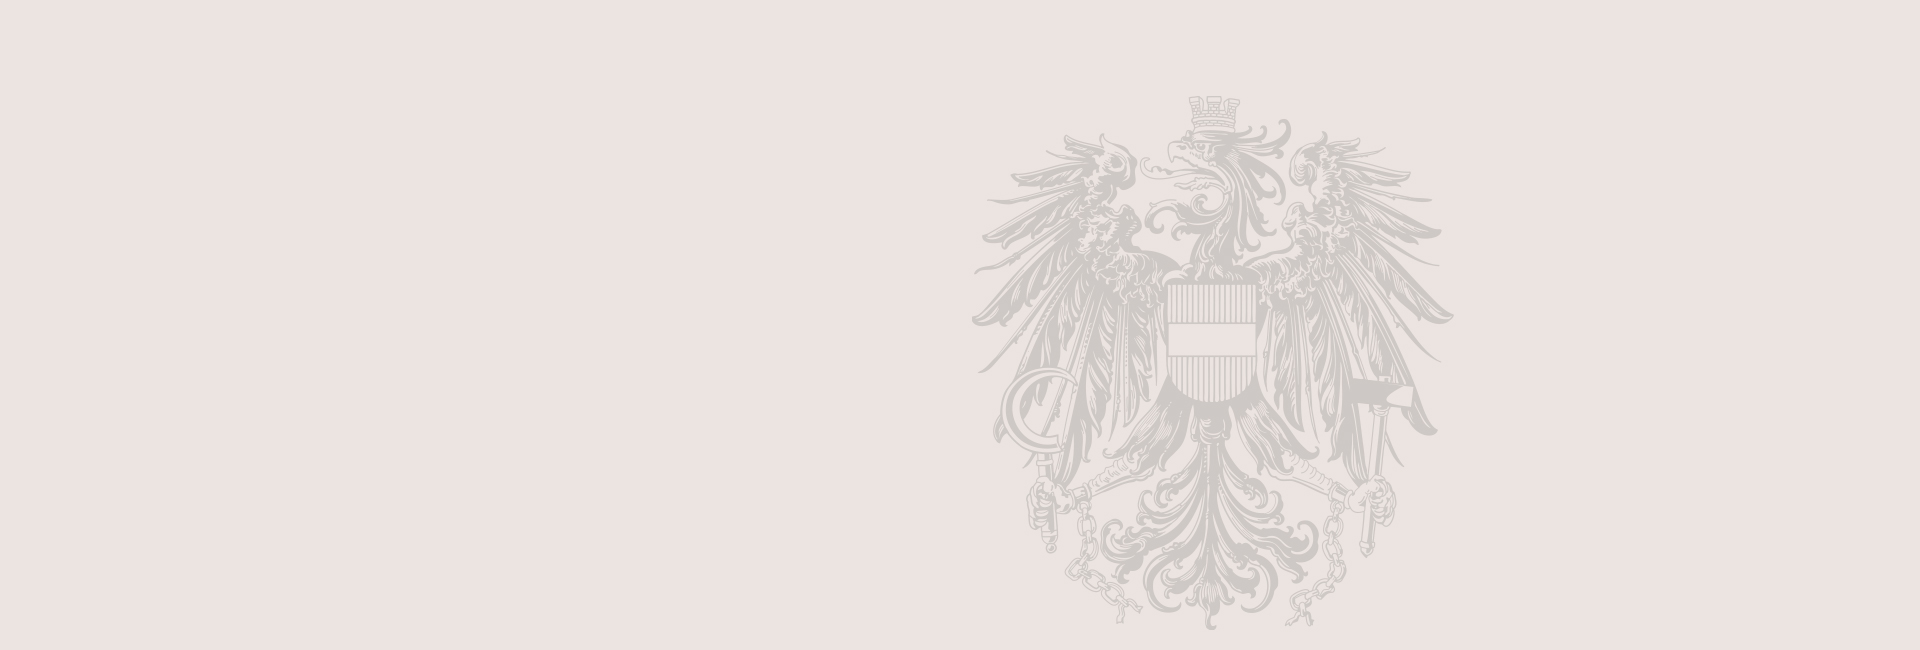 Amtssignatur: Wappen der Republik Österreich Bundesadler